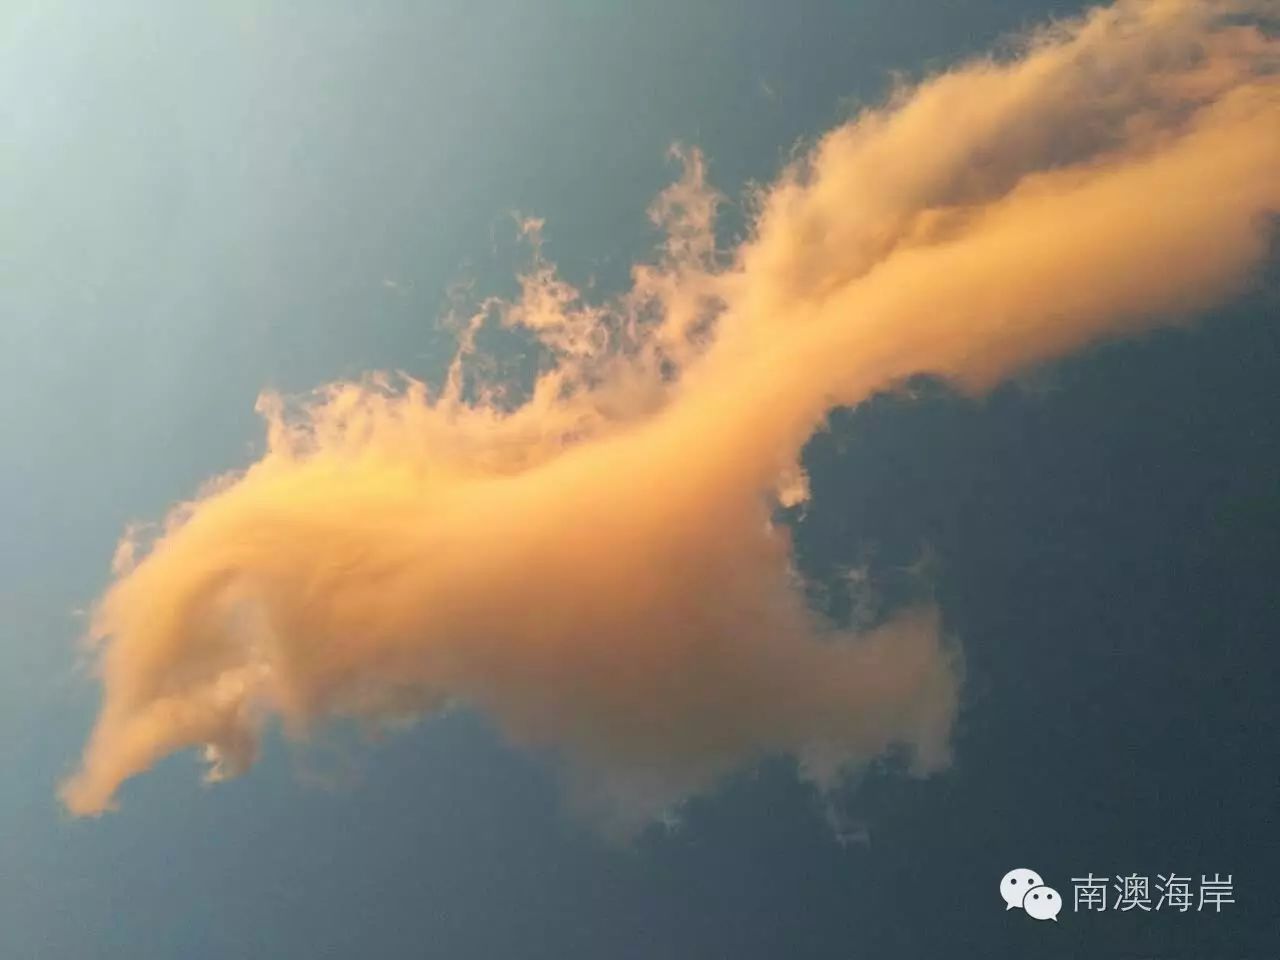 形状似龙似凤,似马似鸟 自由翱翔于天空 图片: 据查询到的资料,火烧云